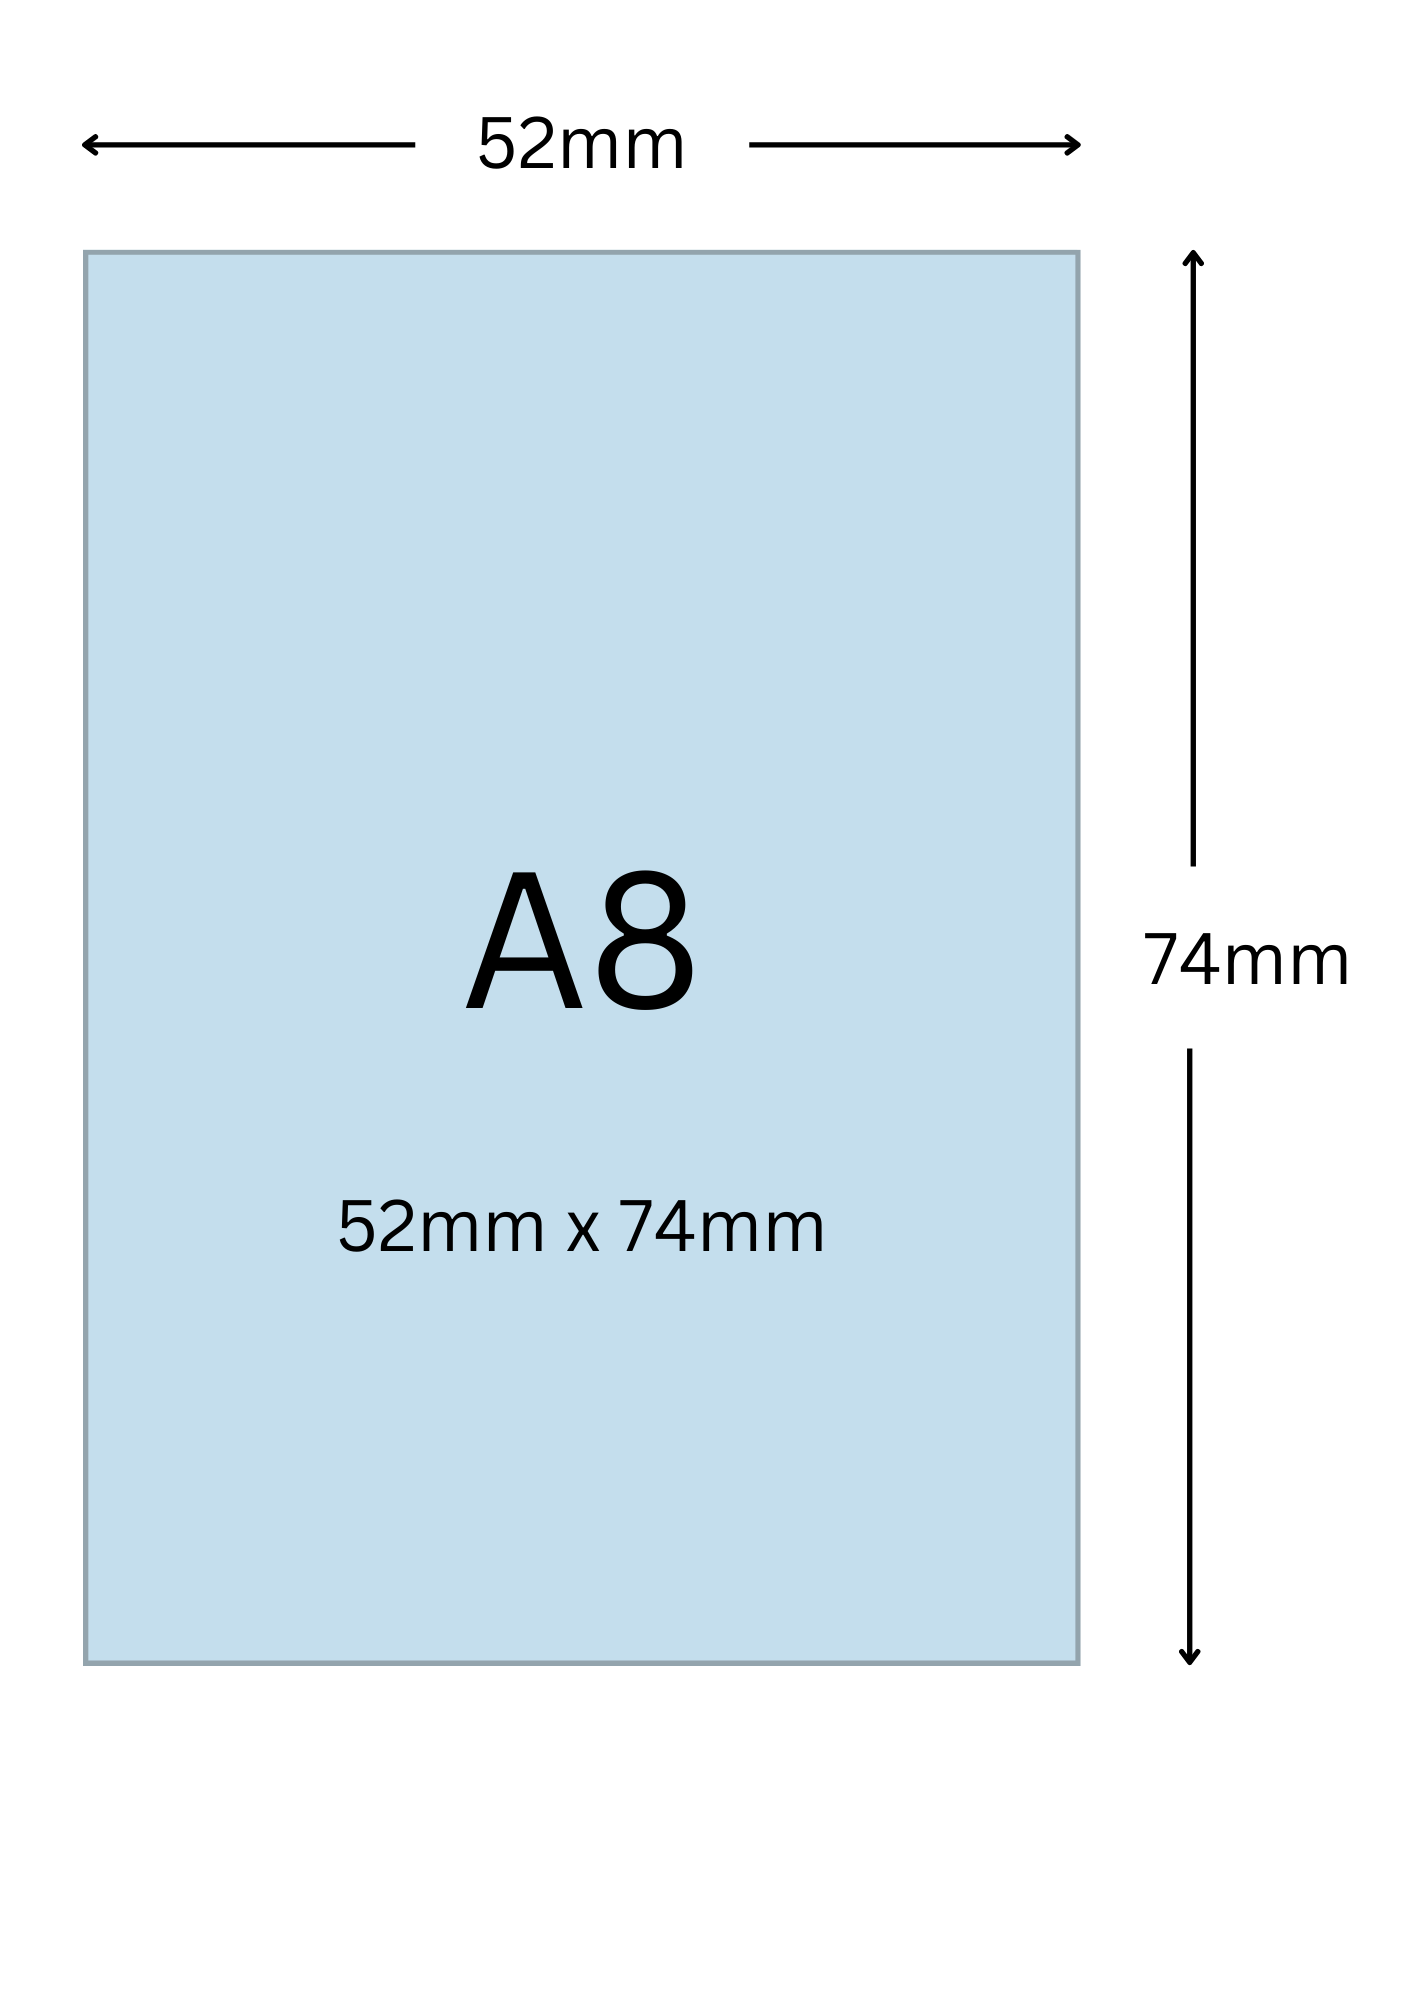 A8尺寸公分, A8紙張尺寸大小, A8紙張對應開數是幾開